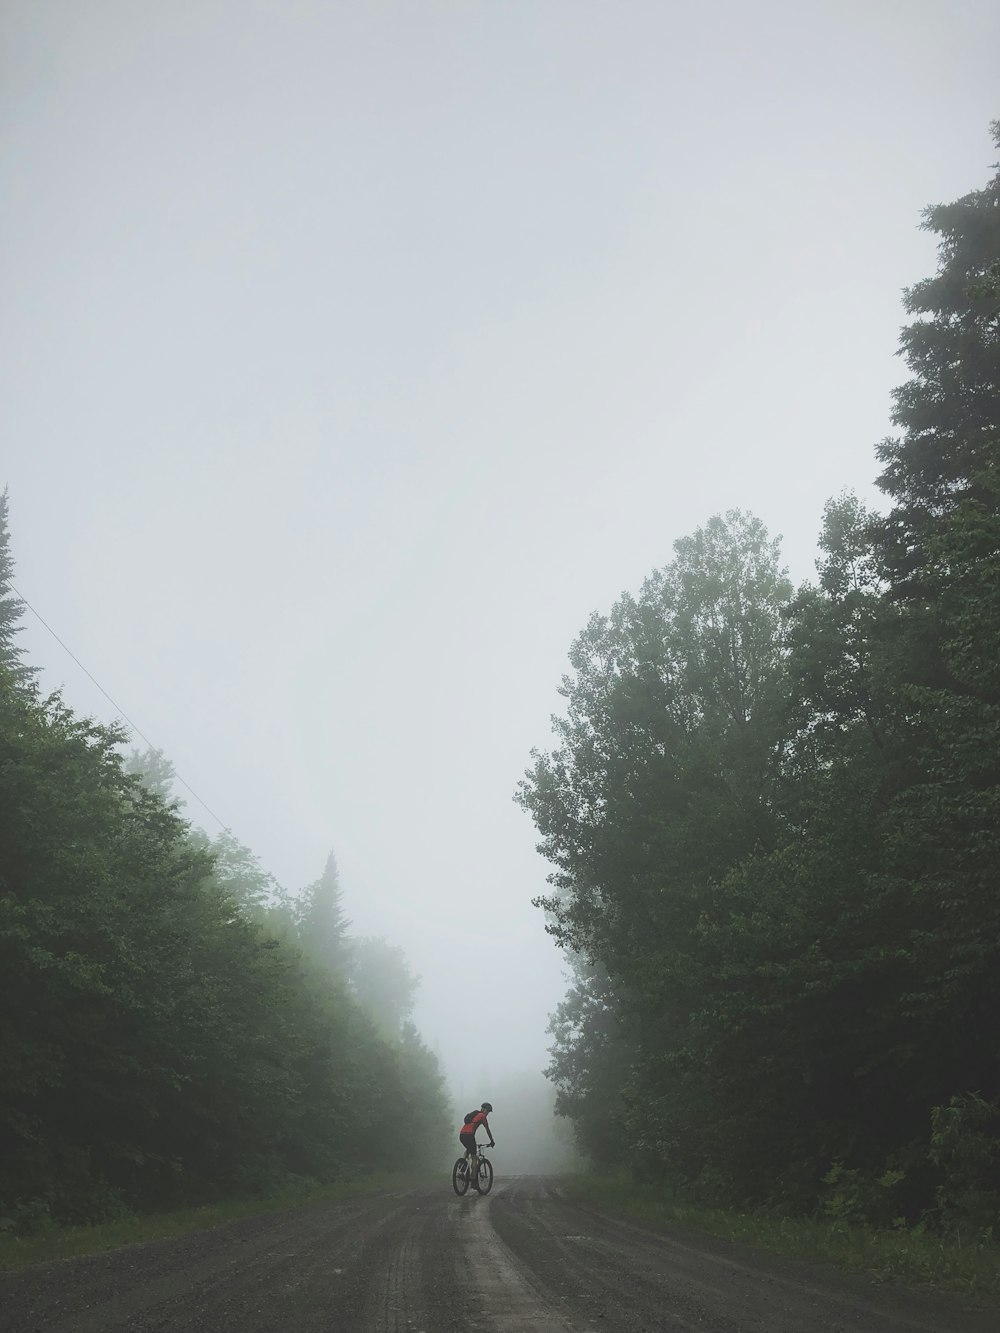 personne faisant du vélo sur la route entourée de grands arbres verts pendant la journée brumeuse